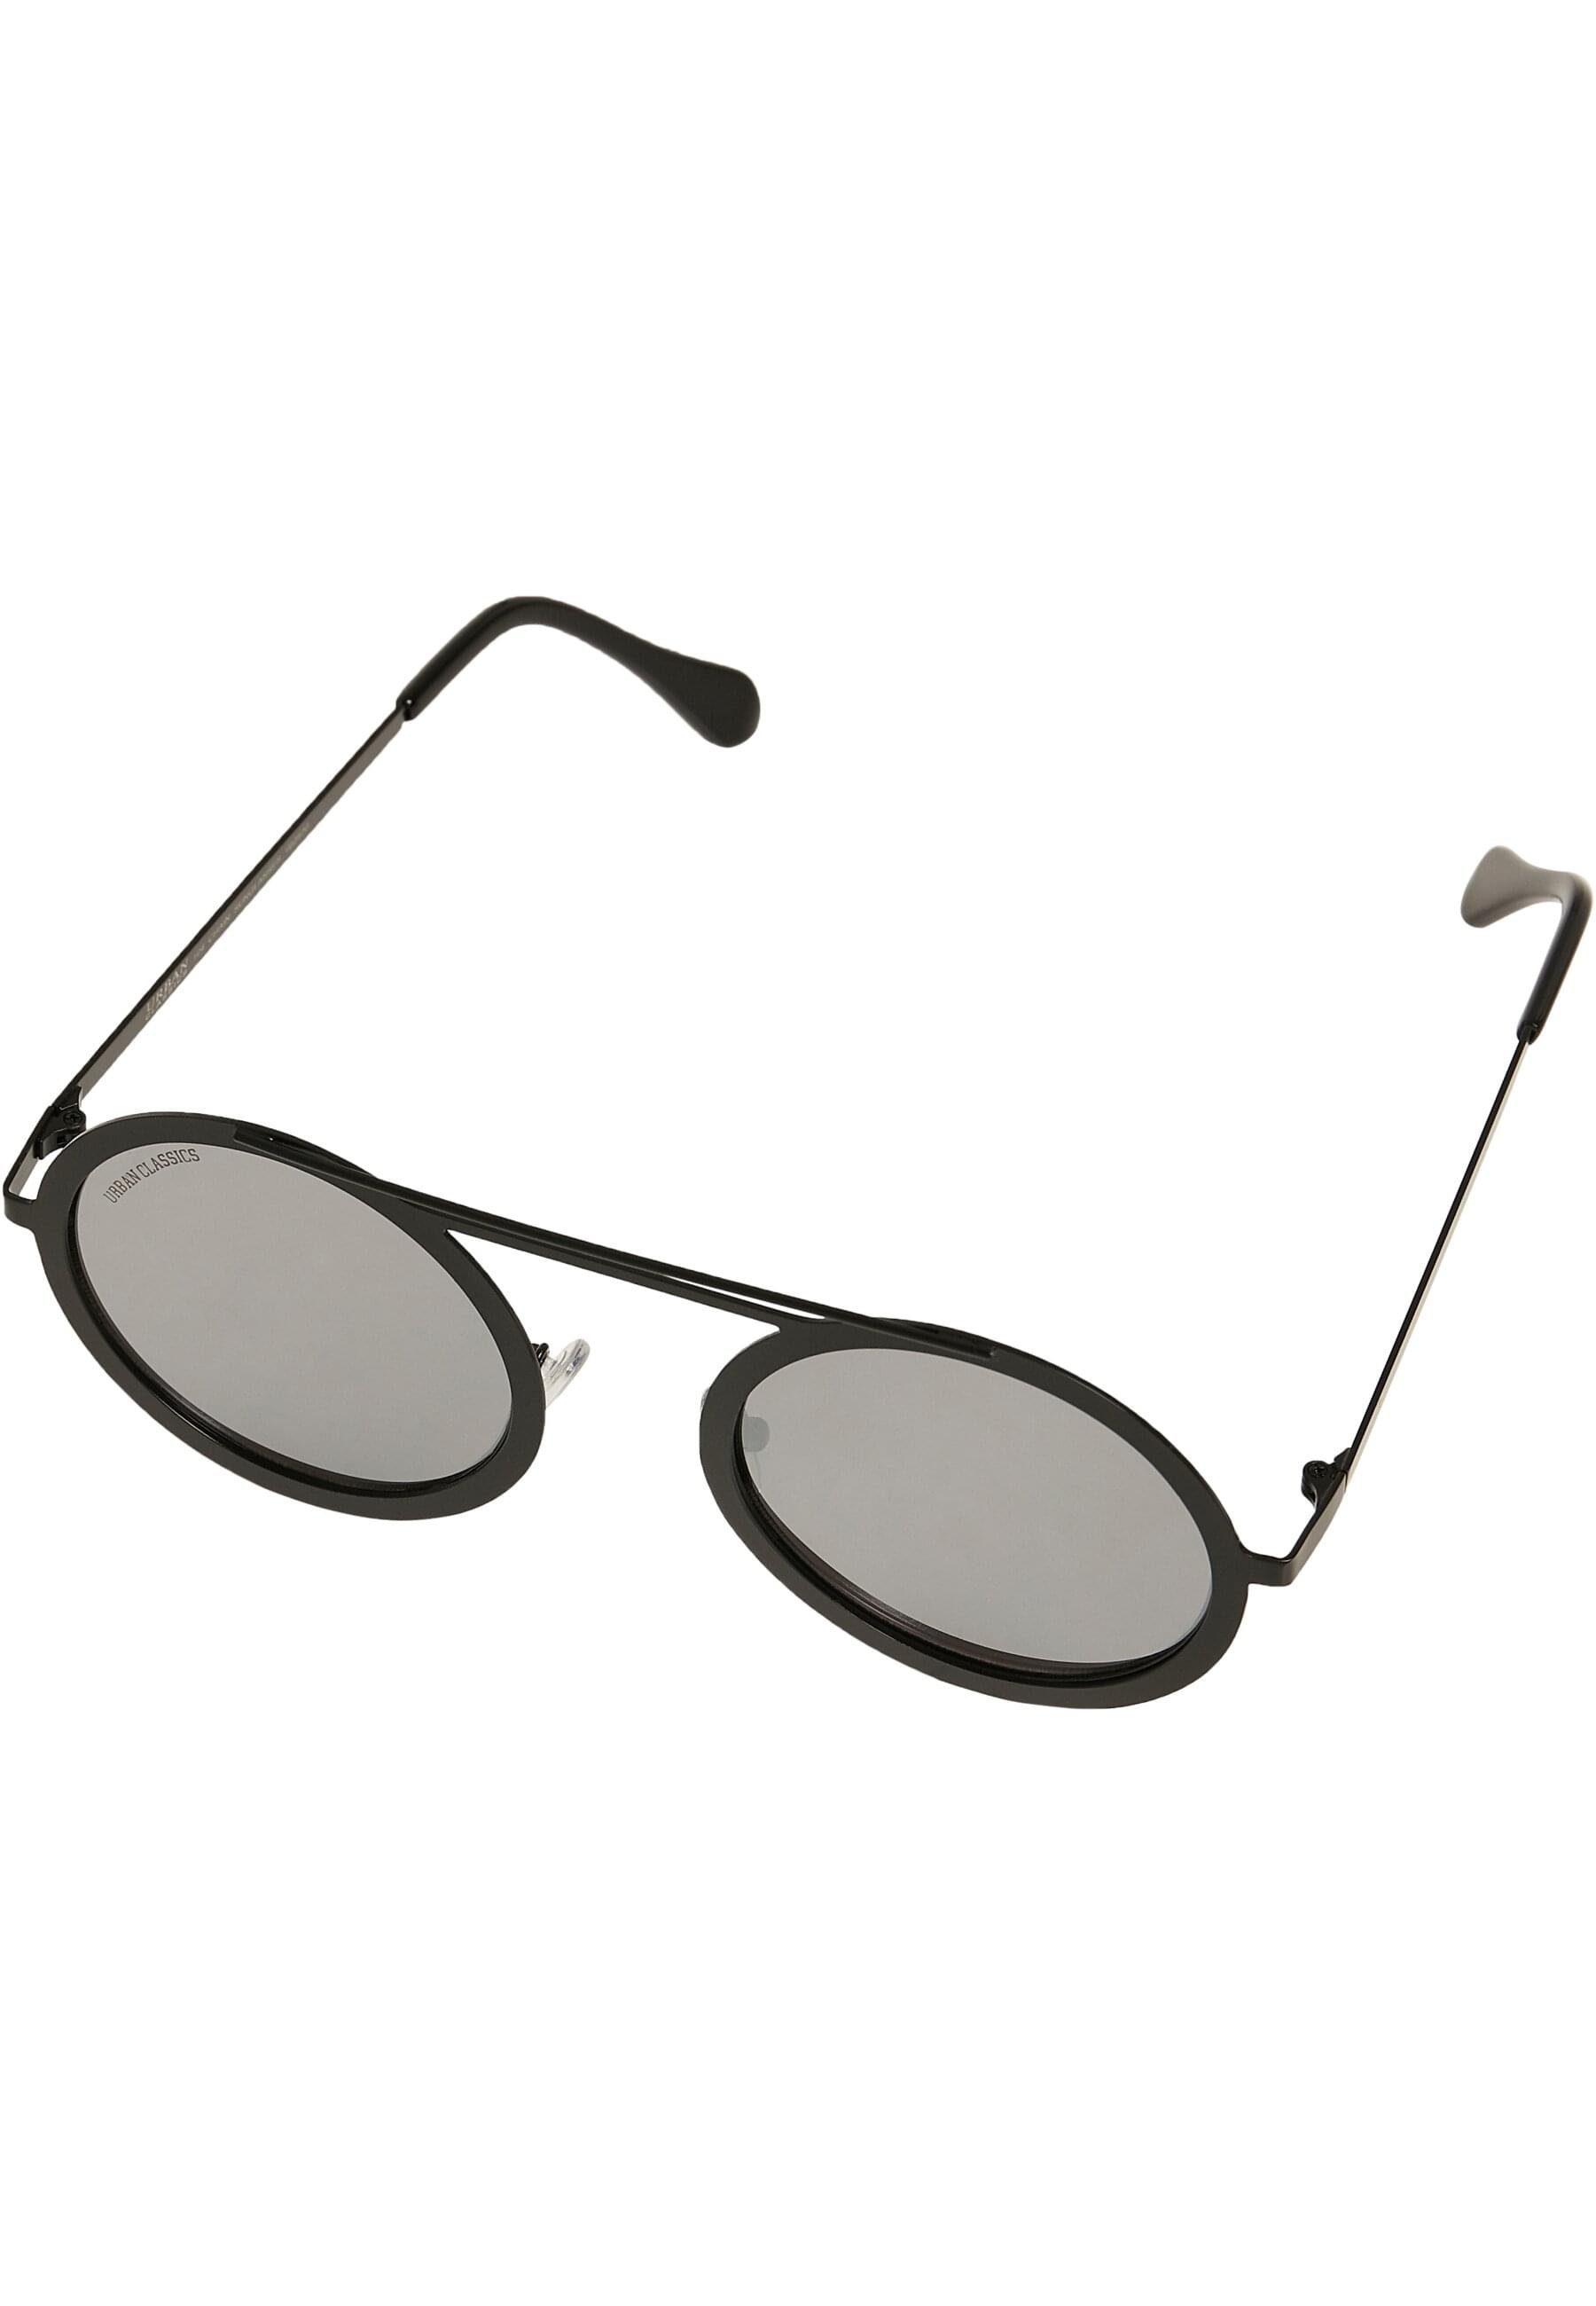 URBAN CLASSICS Sonnenbrille Unisex silver mirror/black 104 Sunglasses Chain